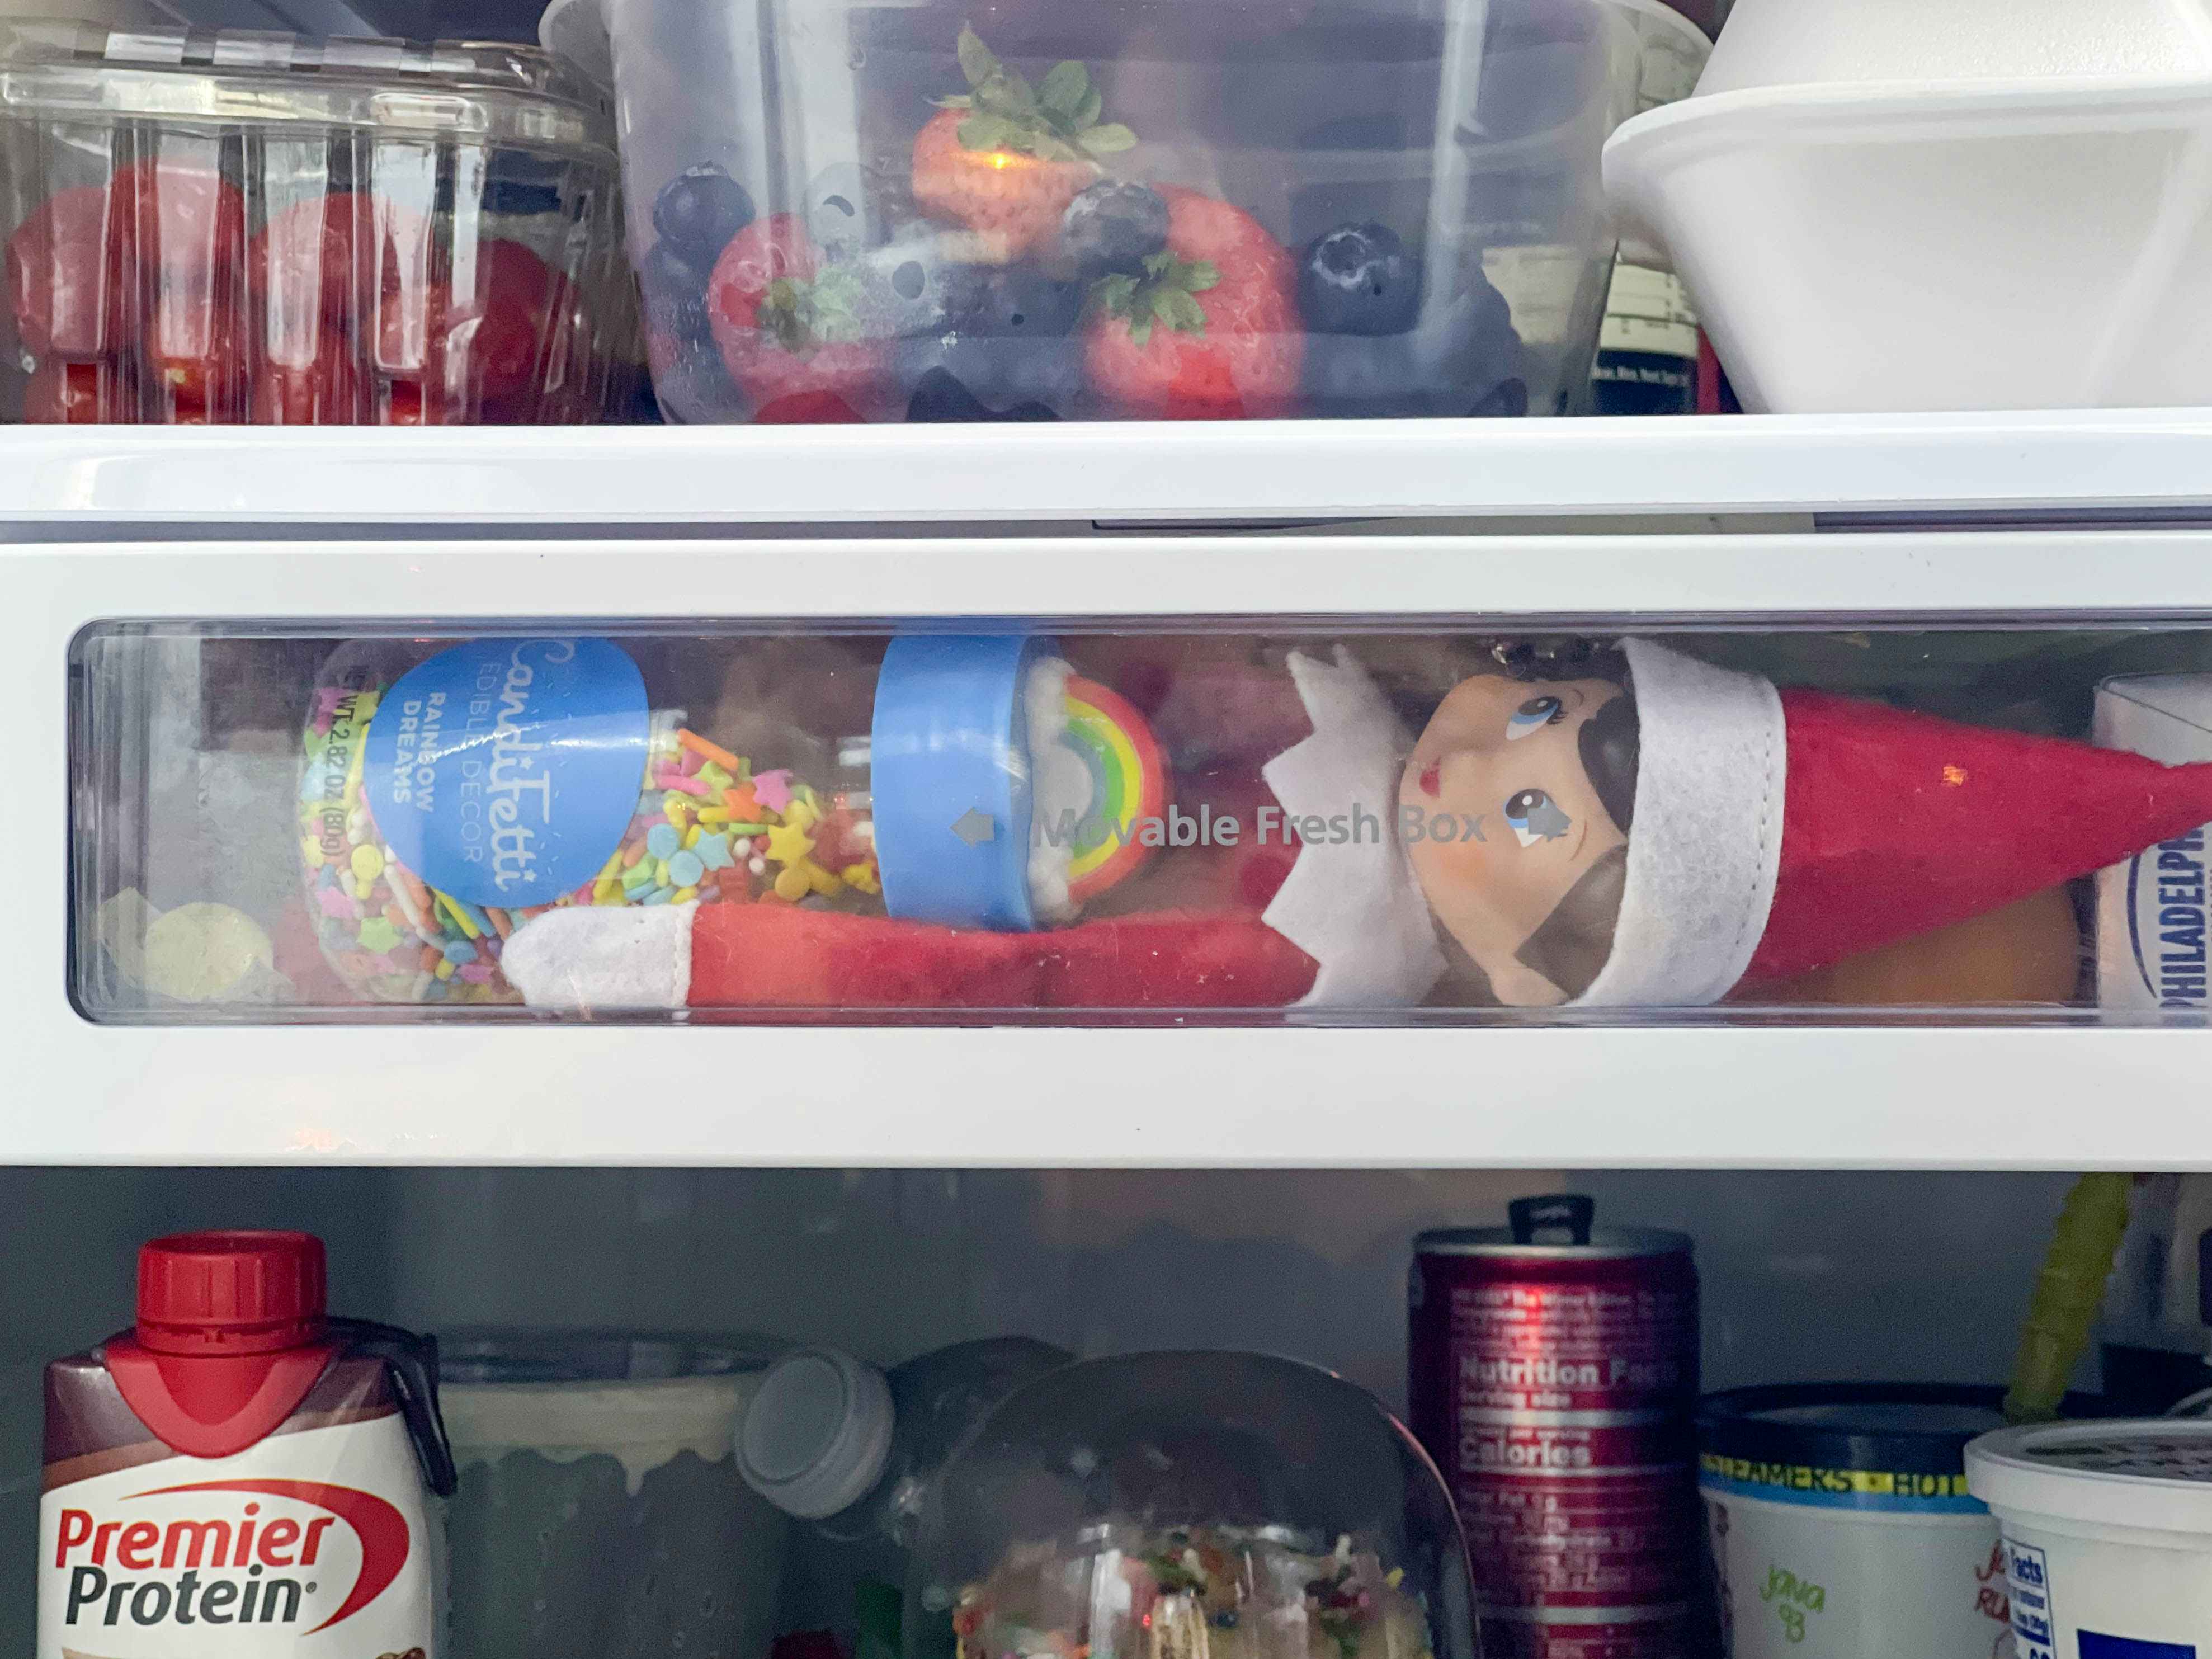 an elf on the shelf doll inside a fridge drawer holding sprinkles